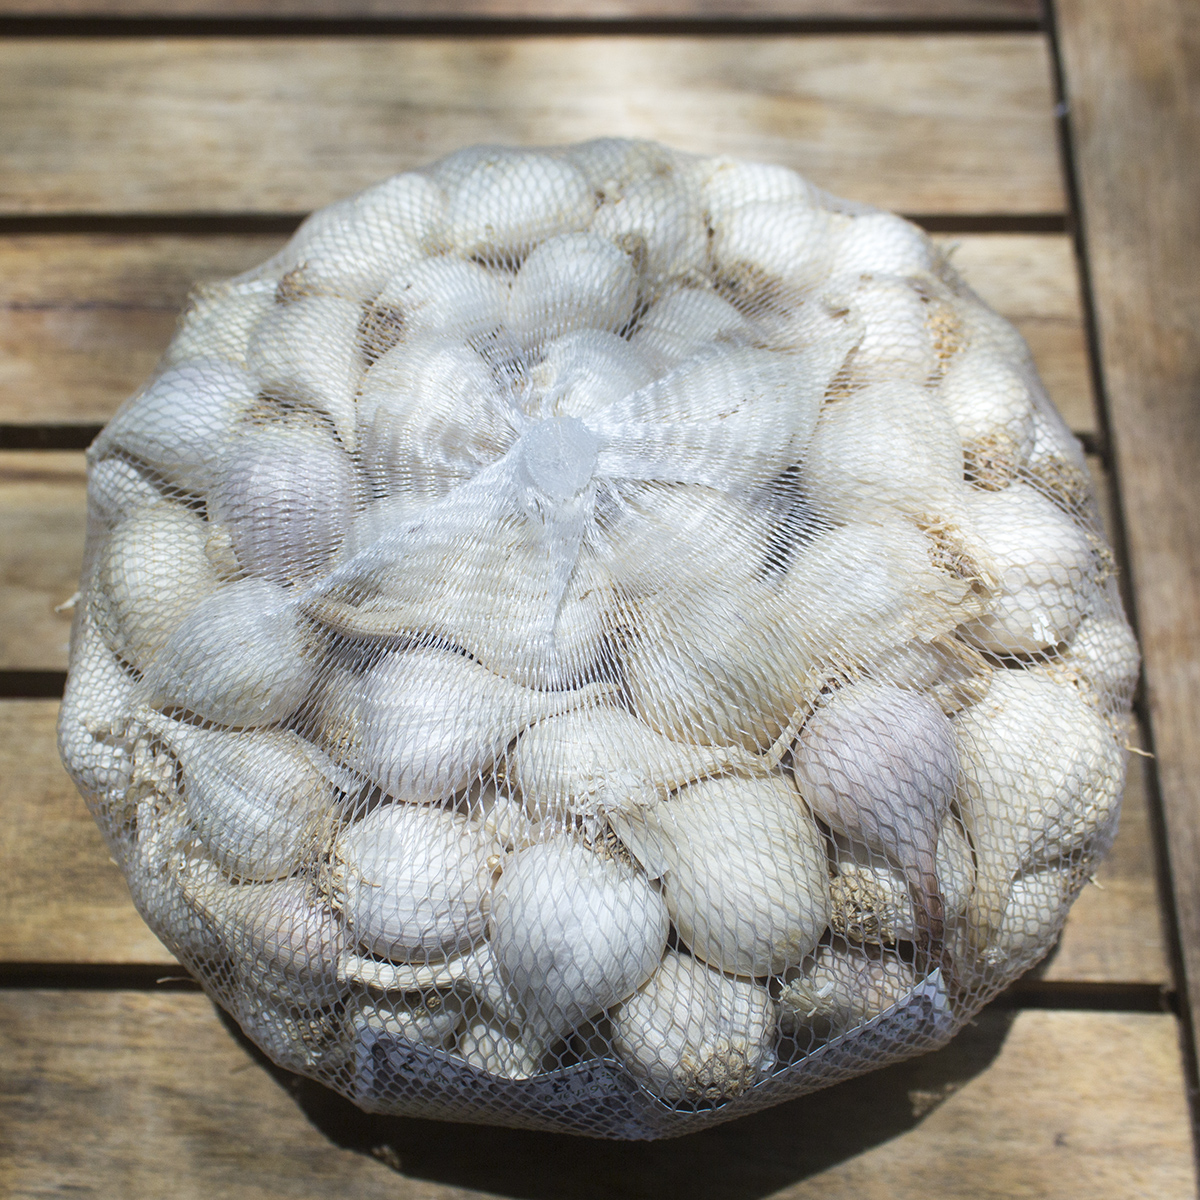 Đặc Sản Quảng Ngãi - Tỏi Lý Sơn Dori - Loại ít tép - Túi lưới 500g - Trồng tại đảo Lý Sơn